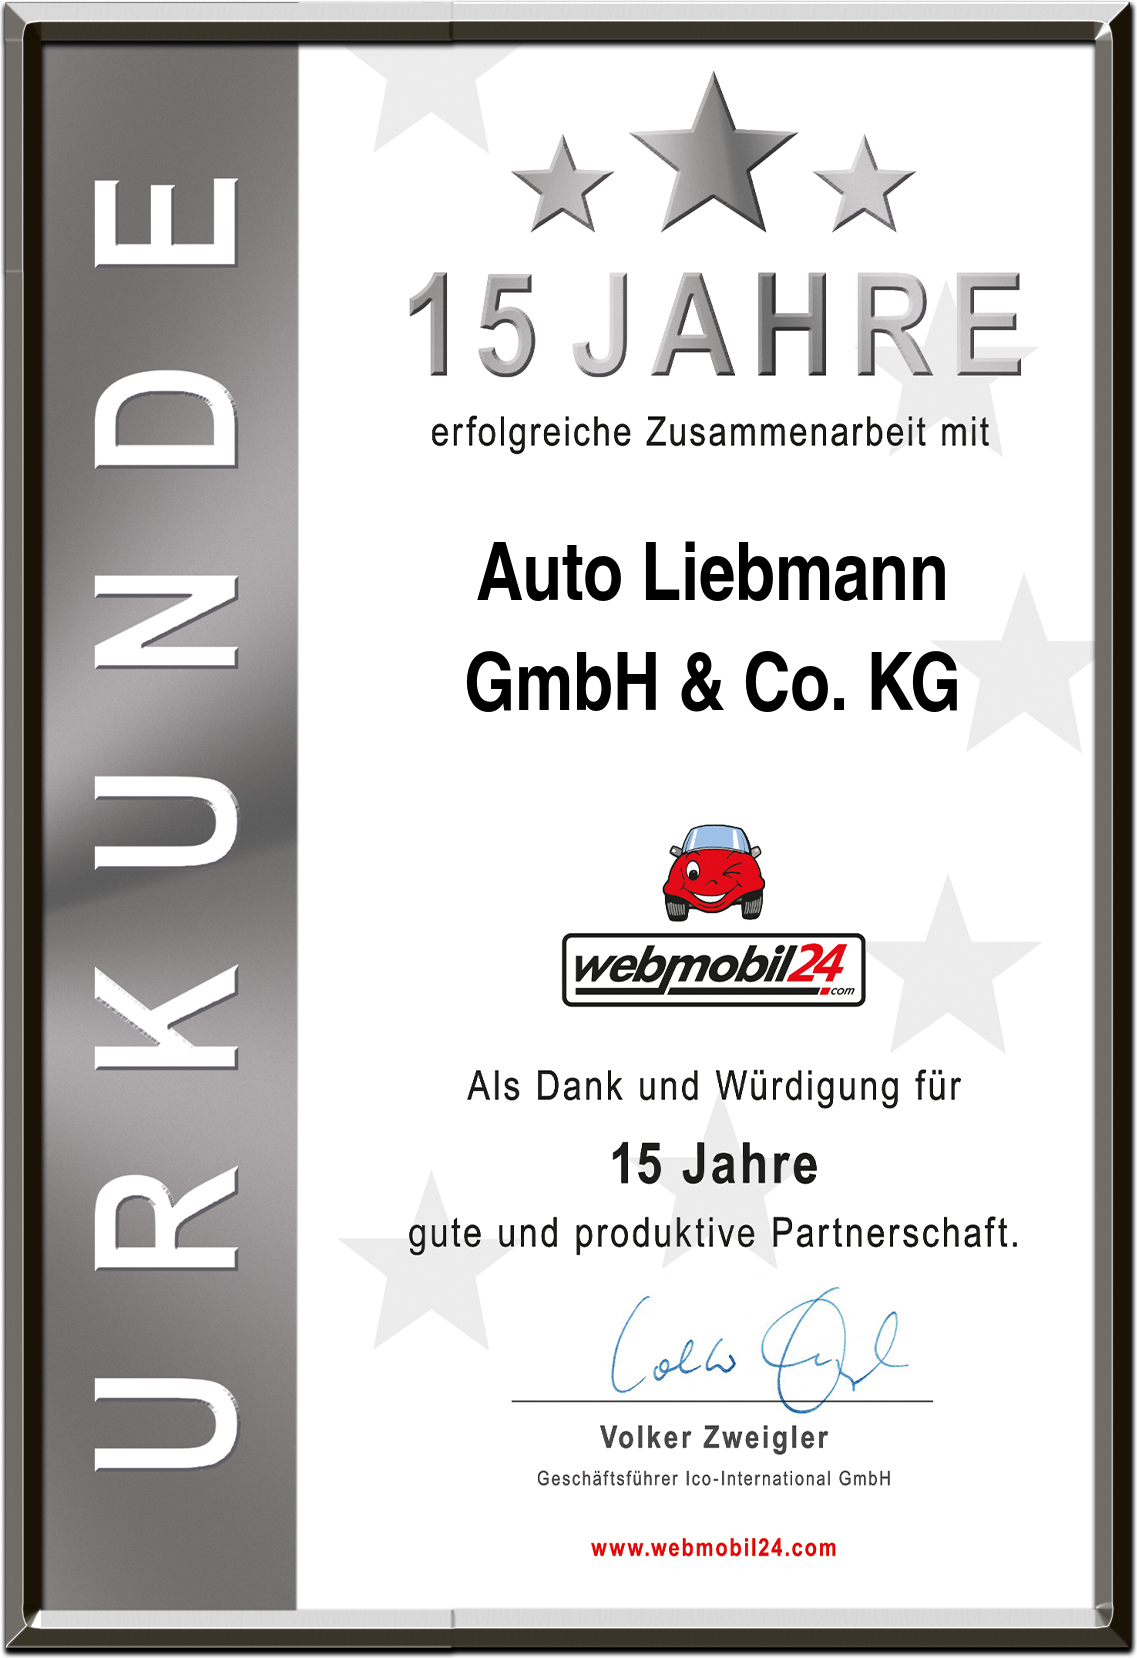 Auto LiebmannGmbH & Co. KG